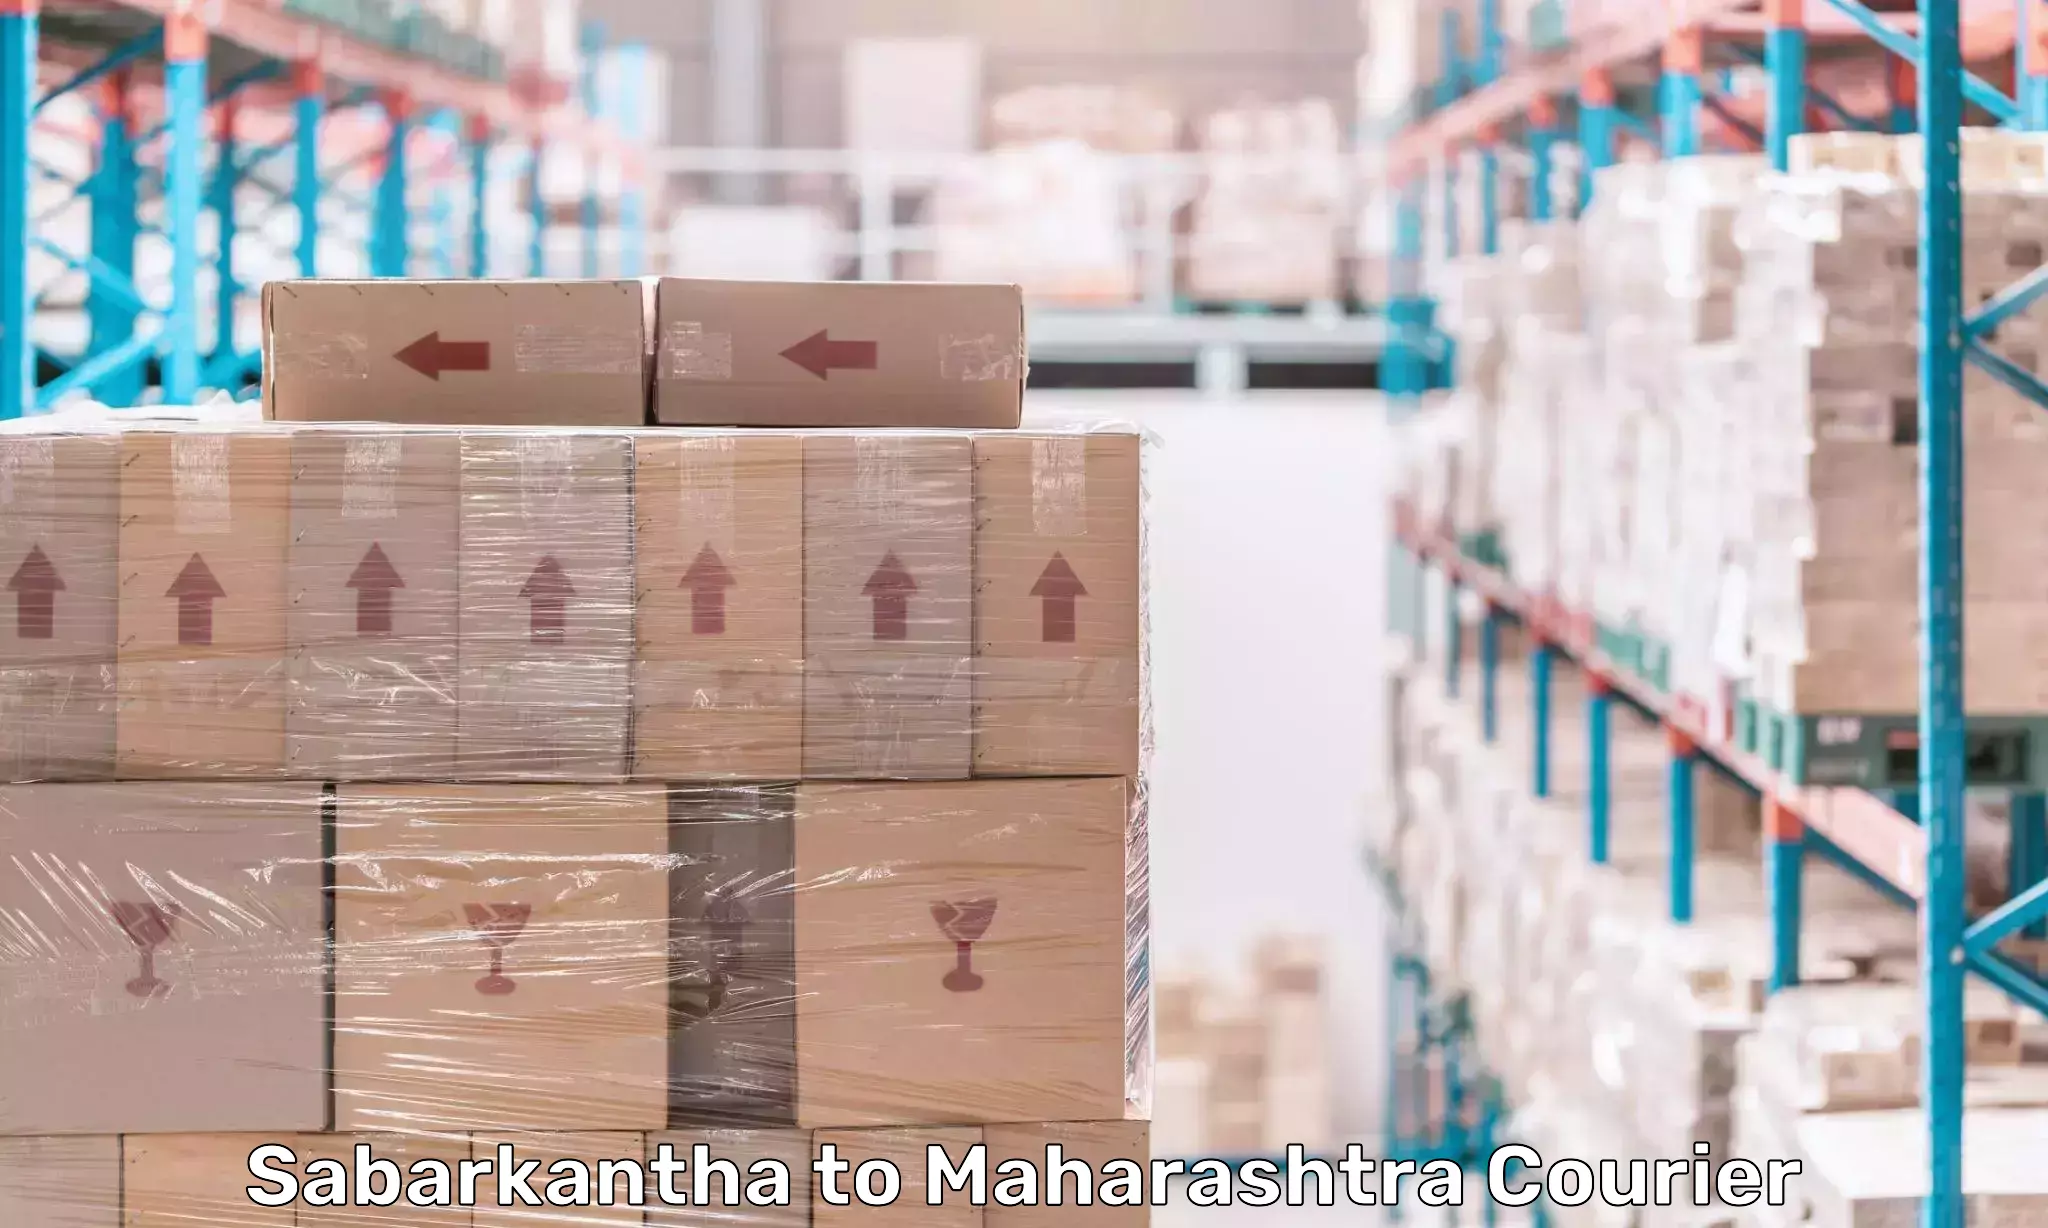 Tech-enabled shipping Sabarkantha to Shivajinagar